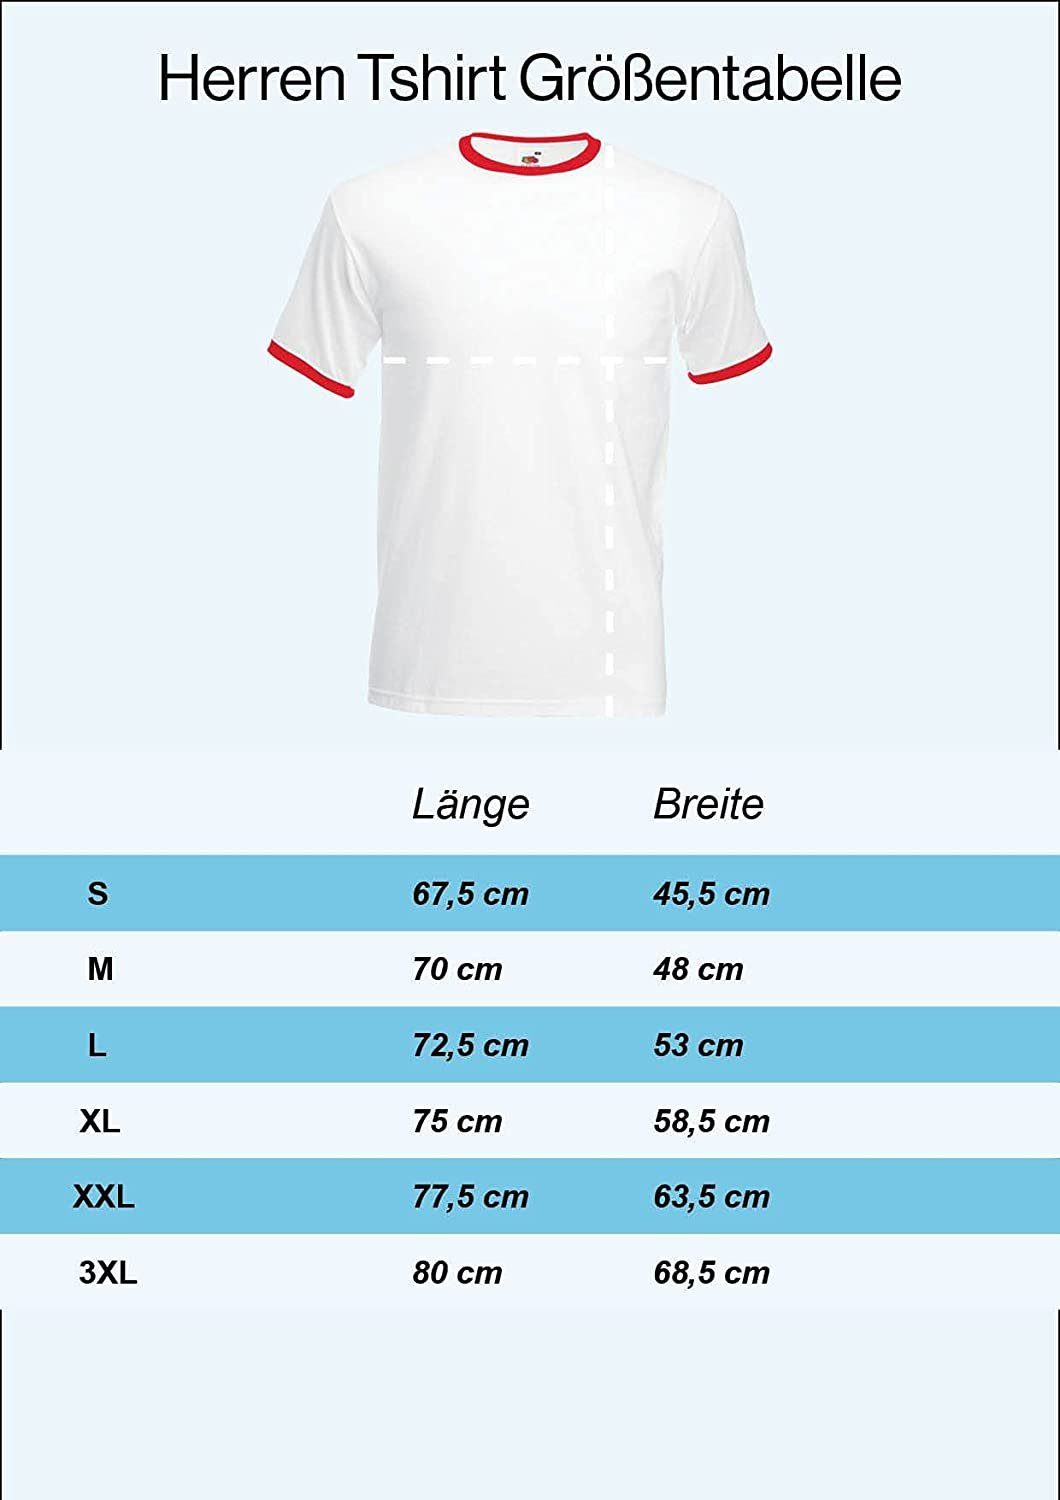 T-Shirt Herren Designz Serbien Print mit Youth Weiß Fußball im Trikot Look T-Shirt trendigem